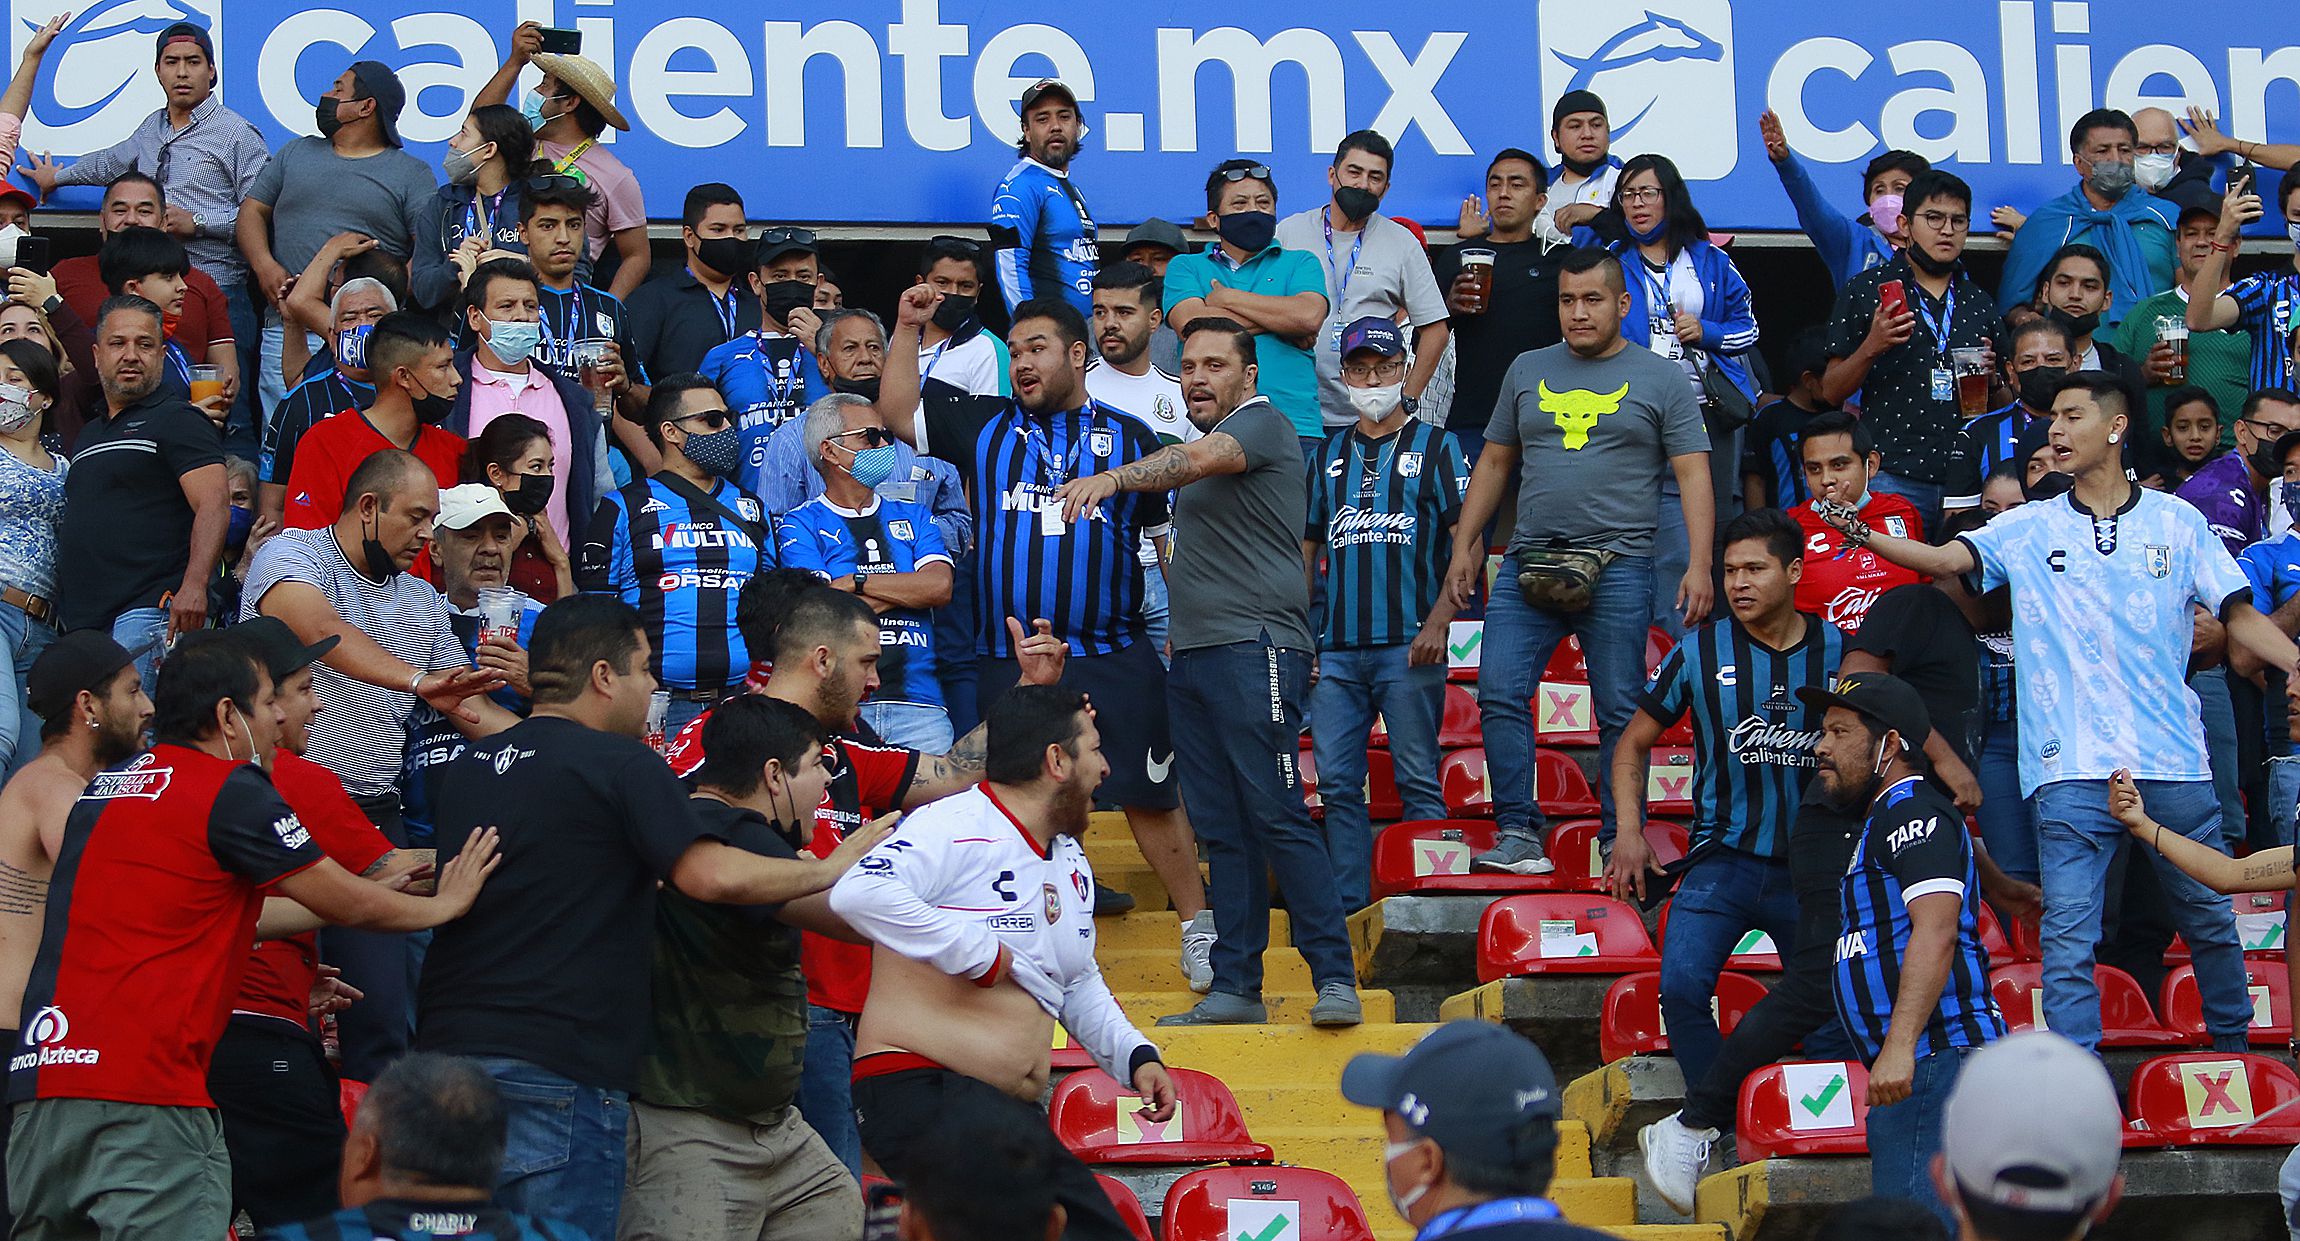 FIFA alienta a las autoridades mexicanas a hacer justicia de forma rápida sobre los hechos ocurridos en el estadio de Querétaro